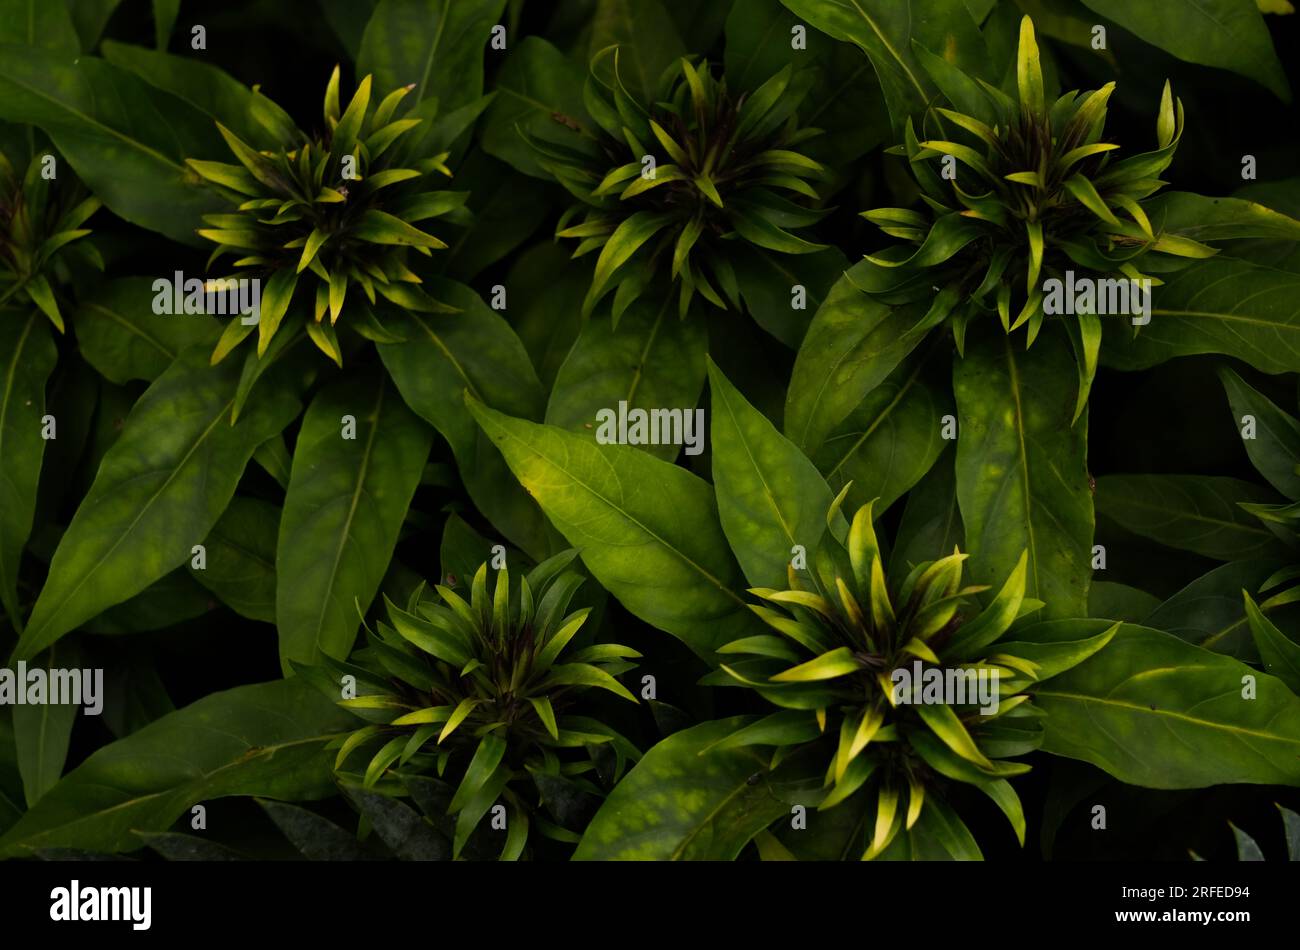 Beloperone plumbaginifolia als Hintergrund. Nahaufnahme der grünen Pflanze. Plumbagin folia. Pflanzenarten von Justicia, eine Gattung blühender Pflanzen der Familie Stockfoto